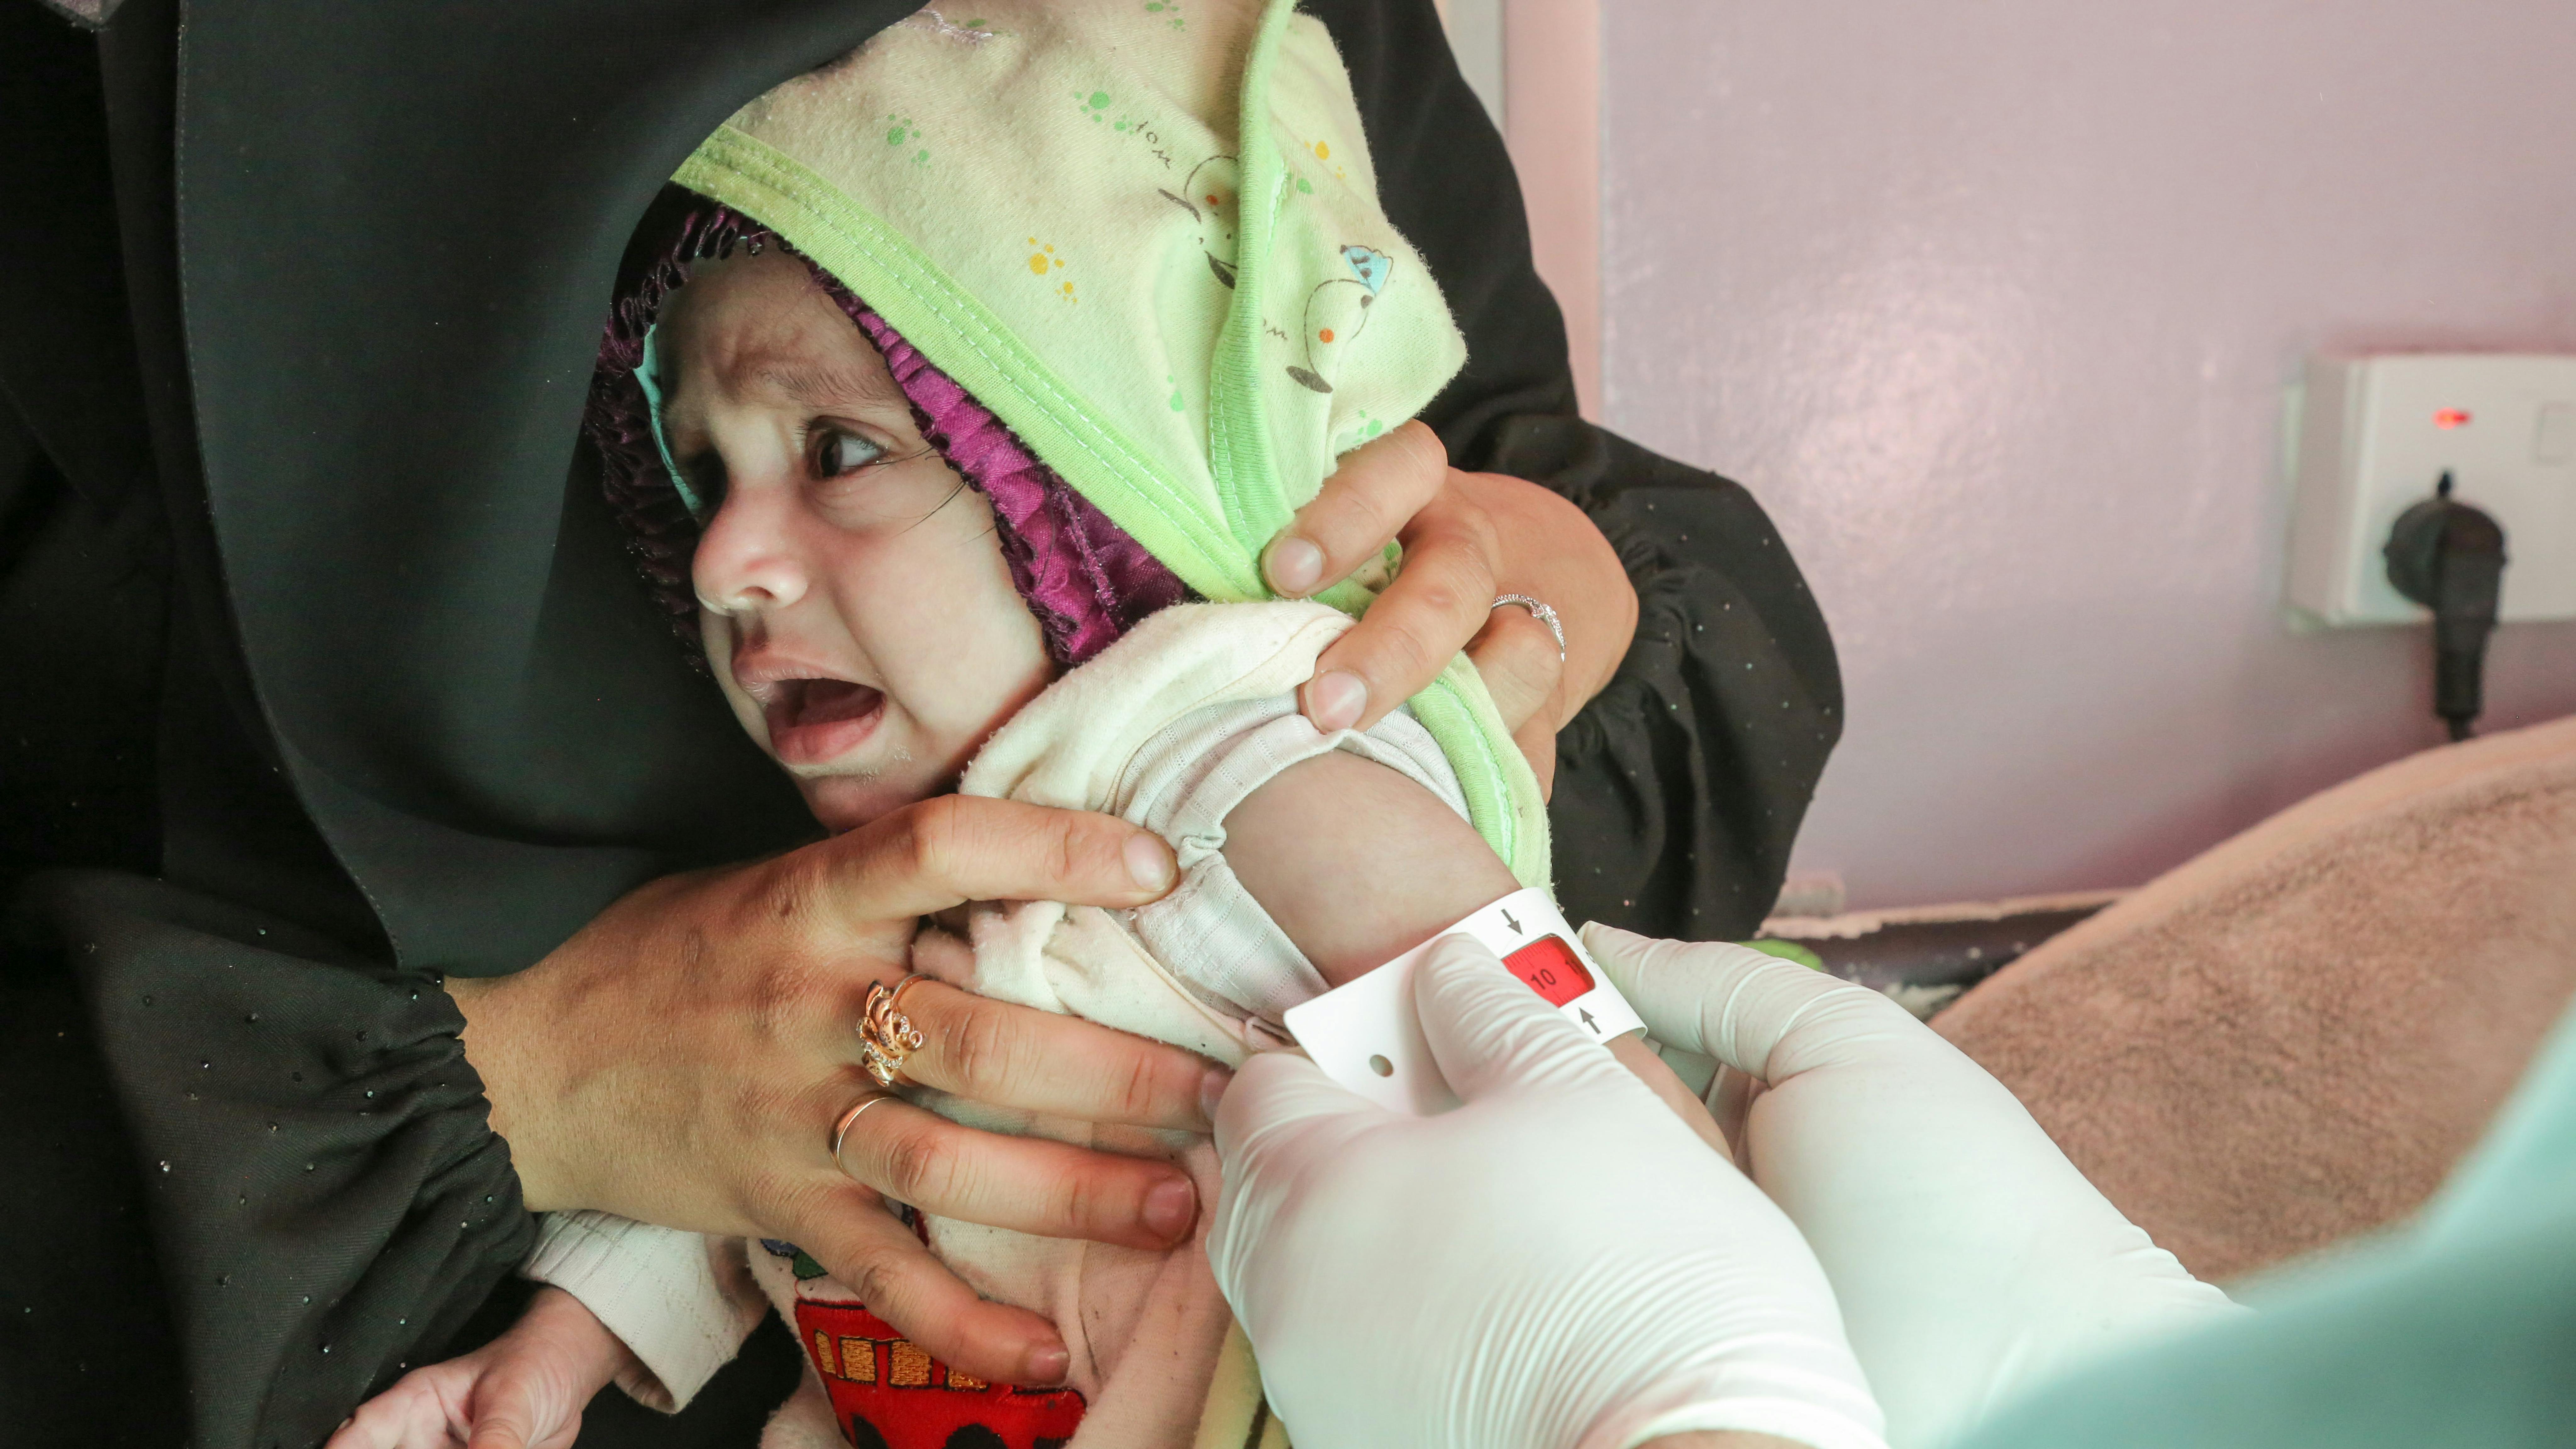 La piccola bambina Rawabi Mutahar Ahmed Hassan, 7 mesi, mentre le viene misurata la circonferenza del braccio (MUAC) per determinare se è gravemente malnutrita, presso l'ospedale Al-Sabeen sostenuto dall'UNICEF a Sana'a, nello Yemen.